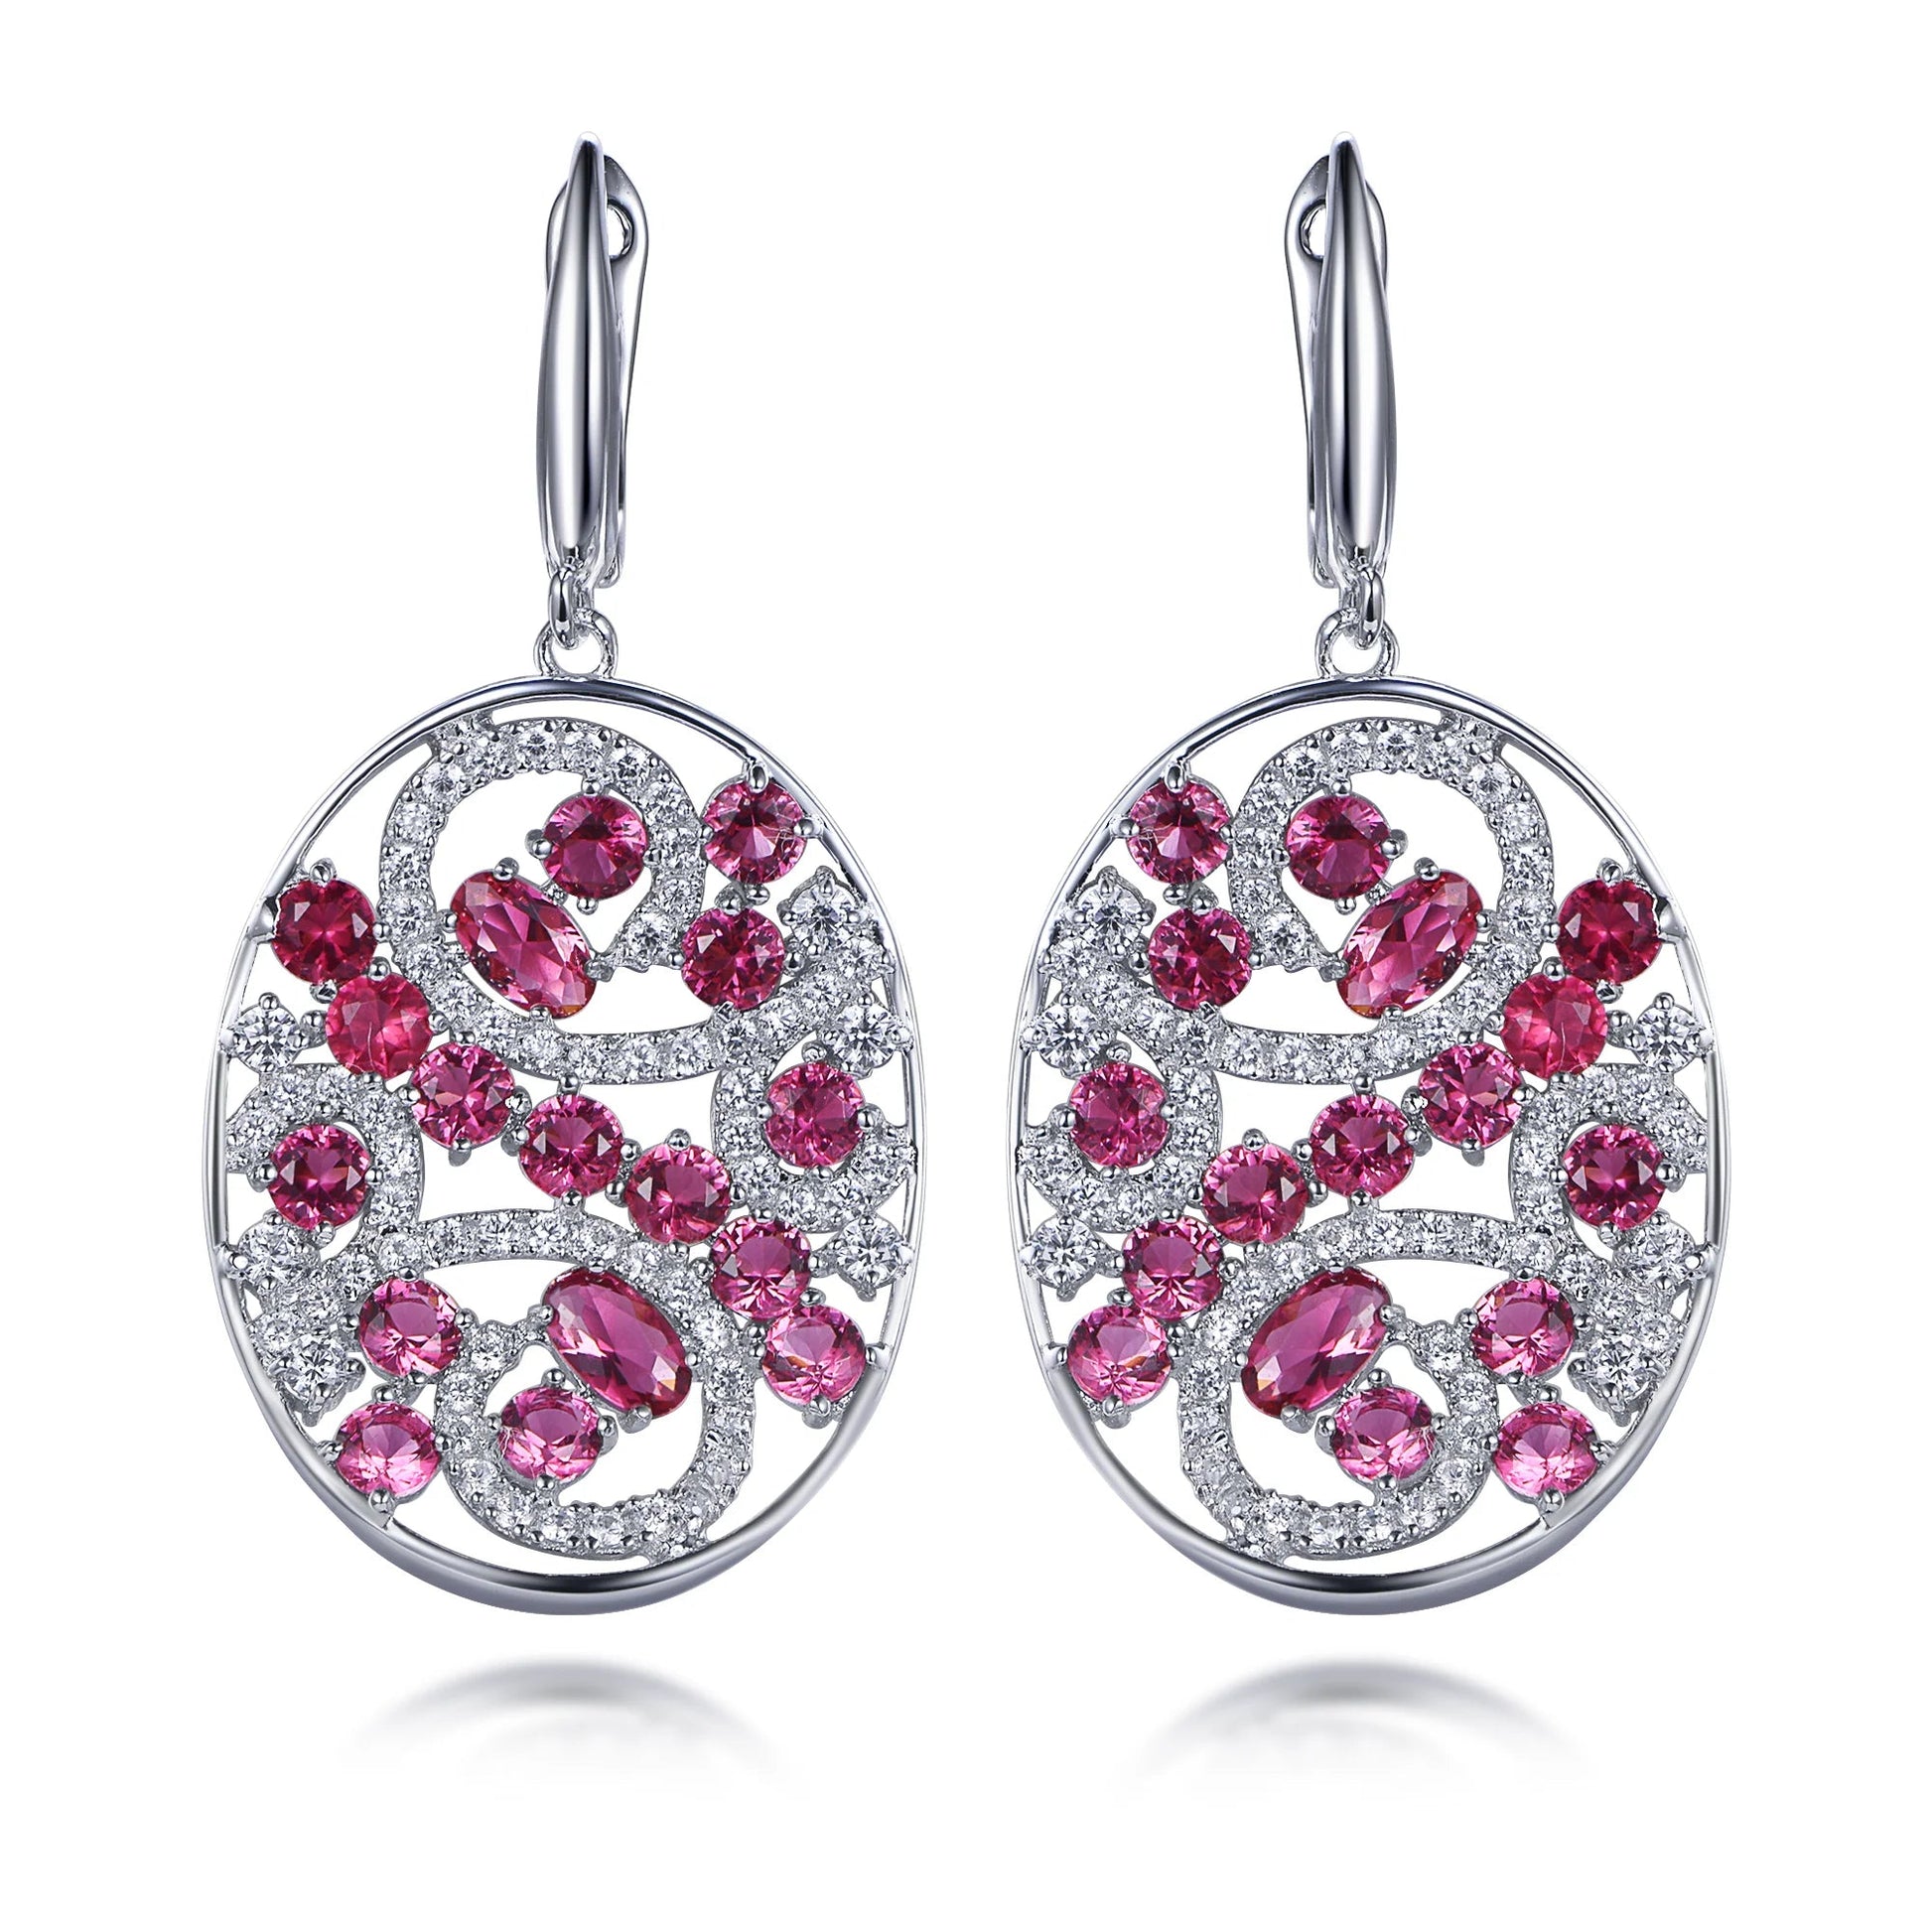 Fashion 925 sterling silver jewelry wholesale earrings charms women 2022 drop Earrings Kirin Jewelry